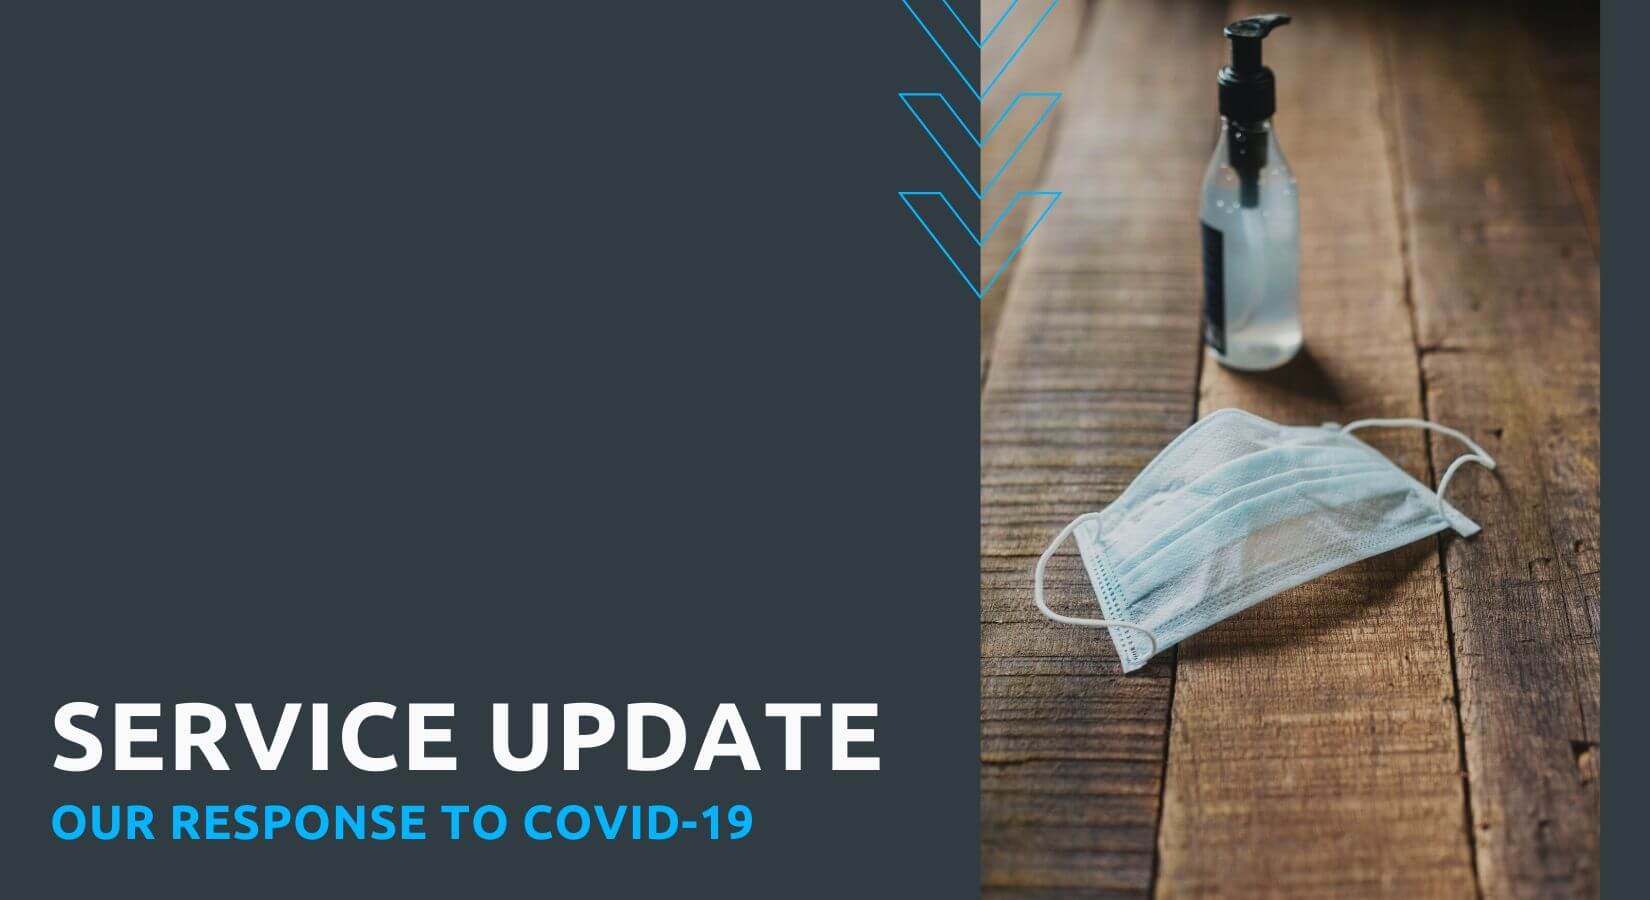 COVID-19 Service Update